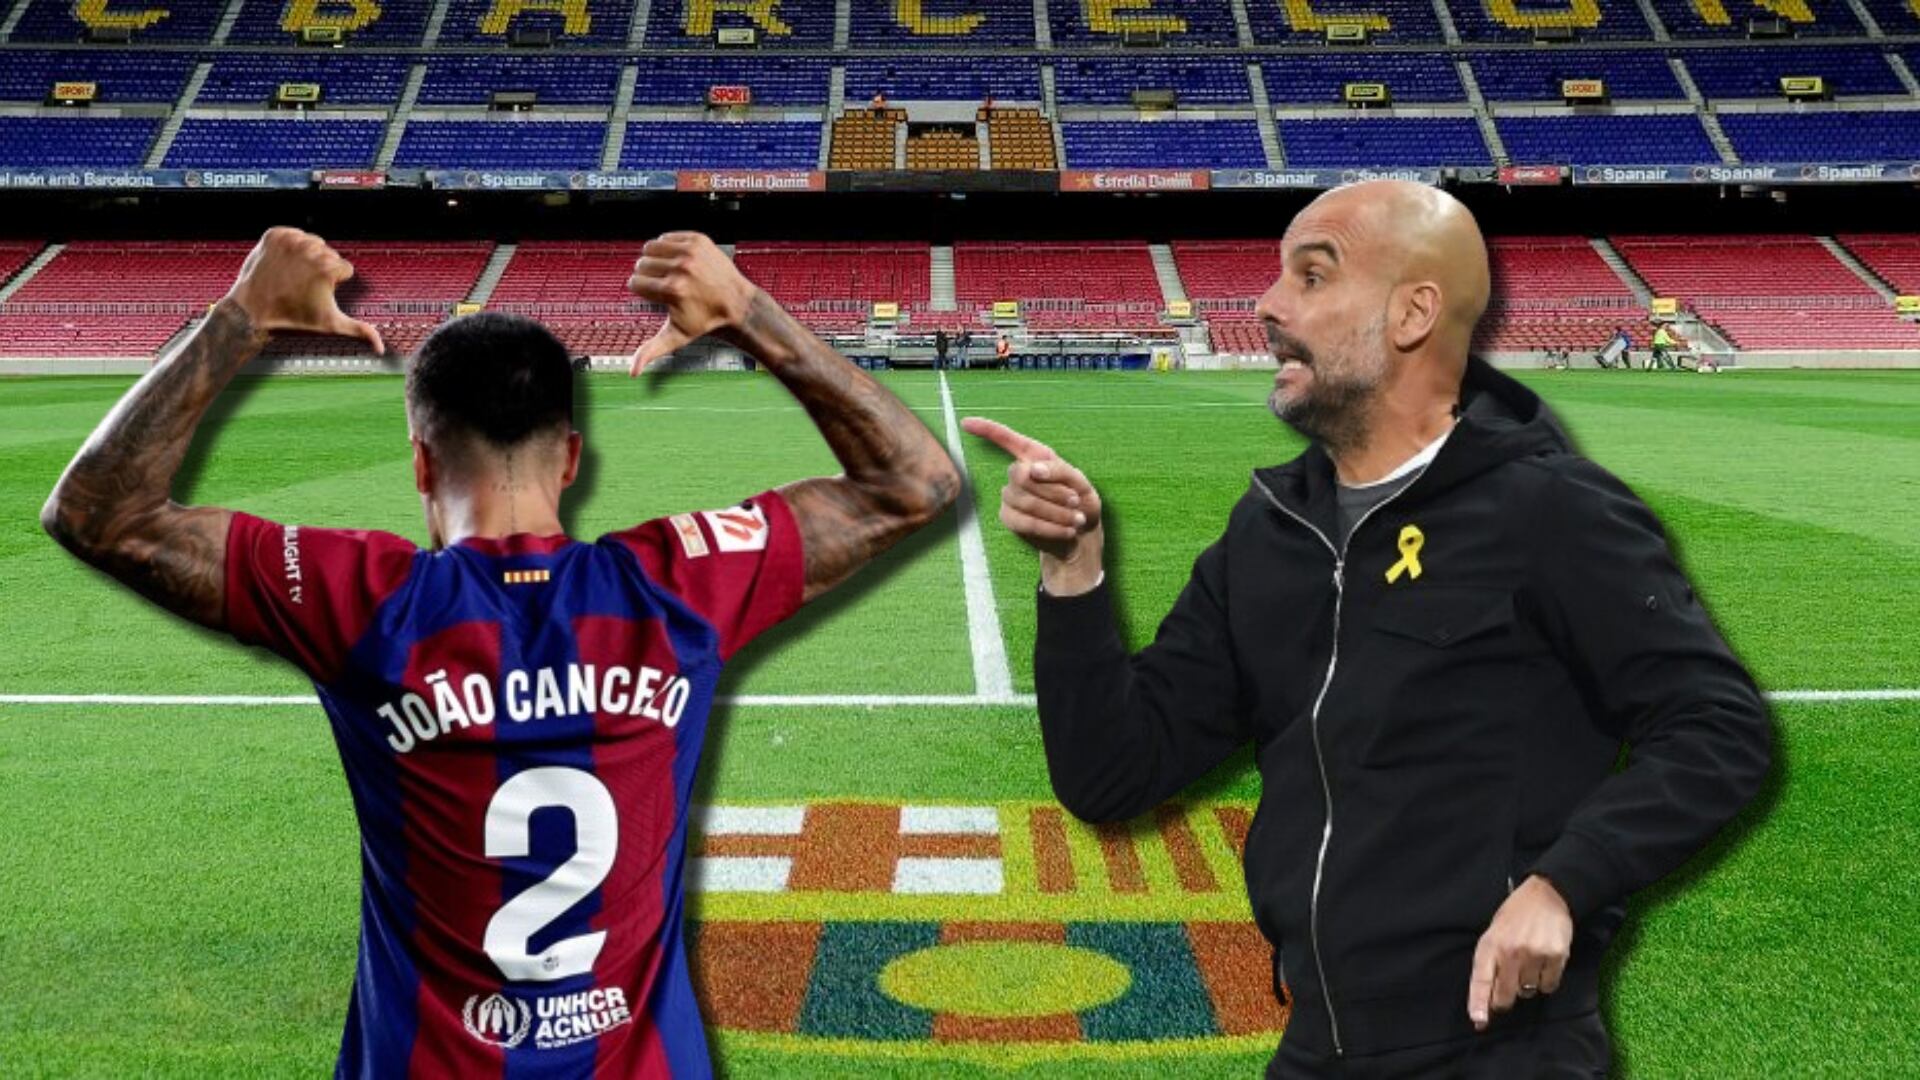 Lo que está dispuesto a hacer Cancelo por quedarse en el Barça, no gustó al City